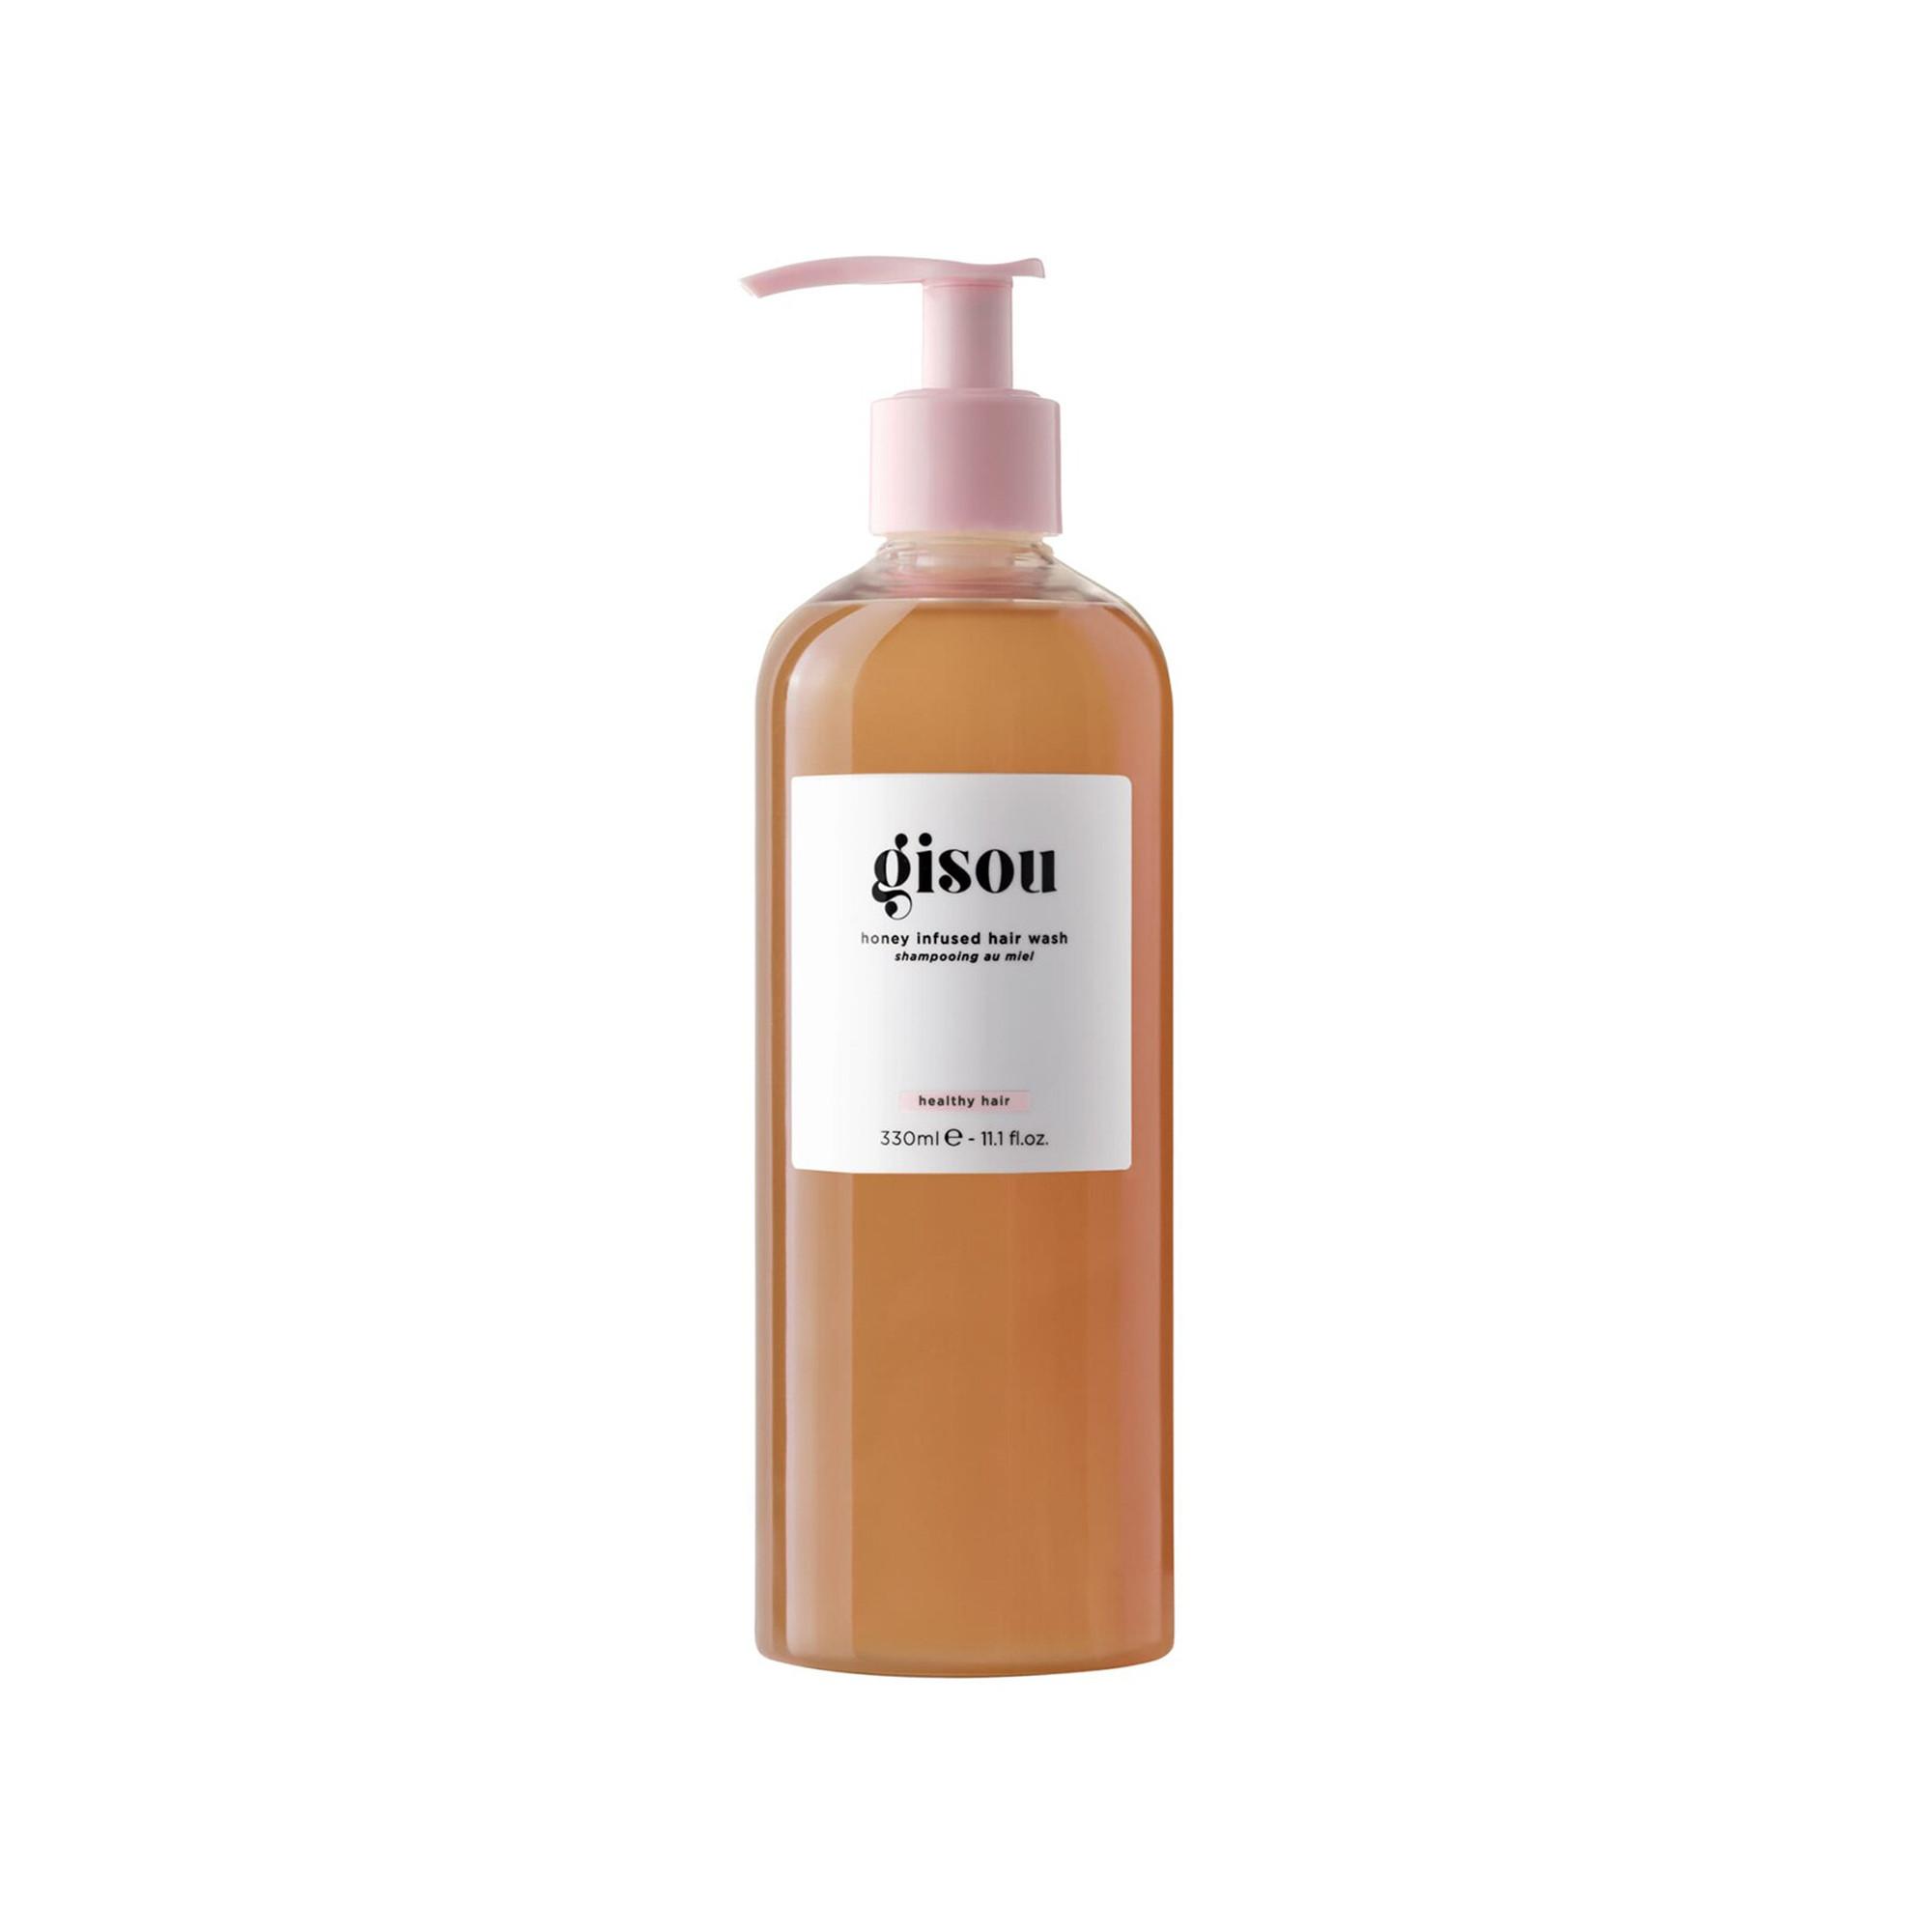 GISOU  Honey Infused Hair Wash - Shampoo 